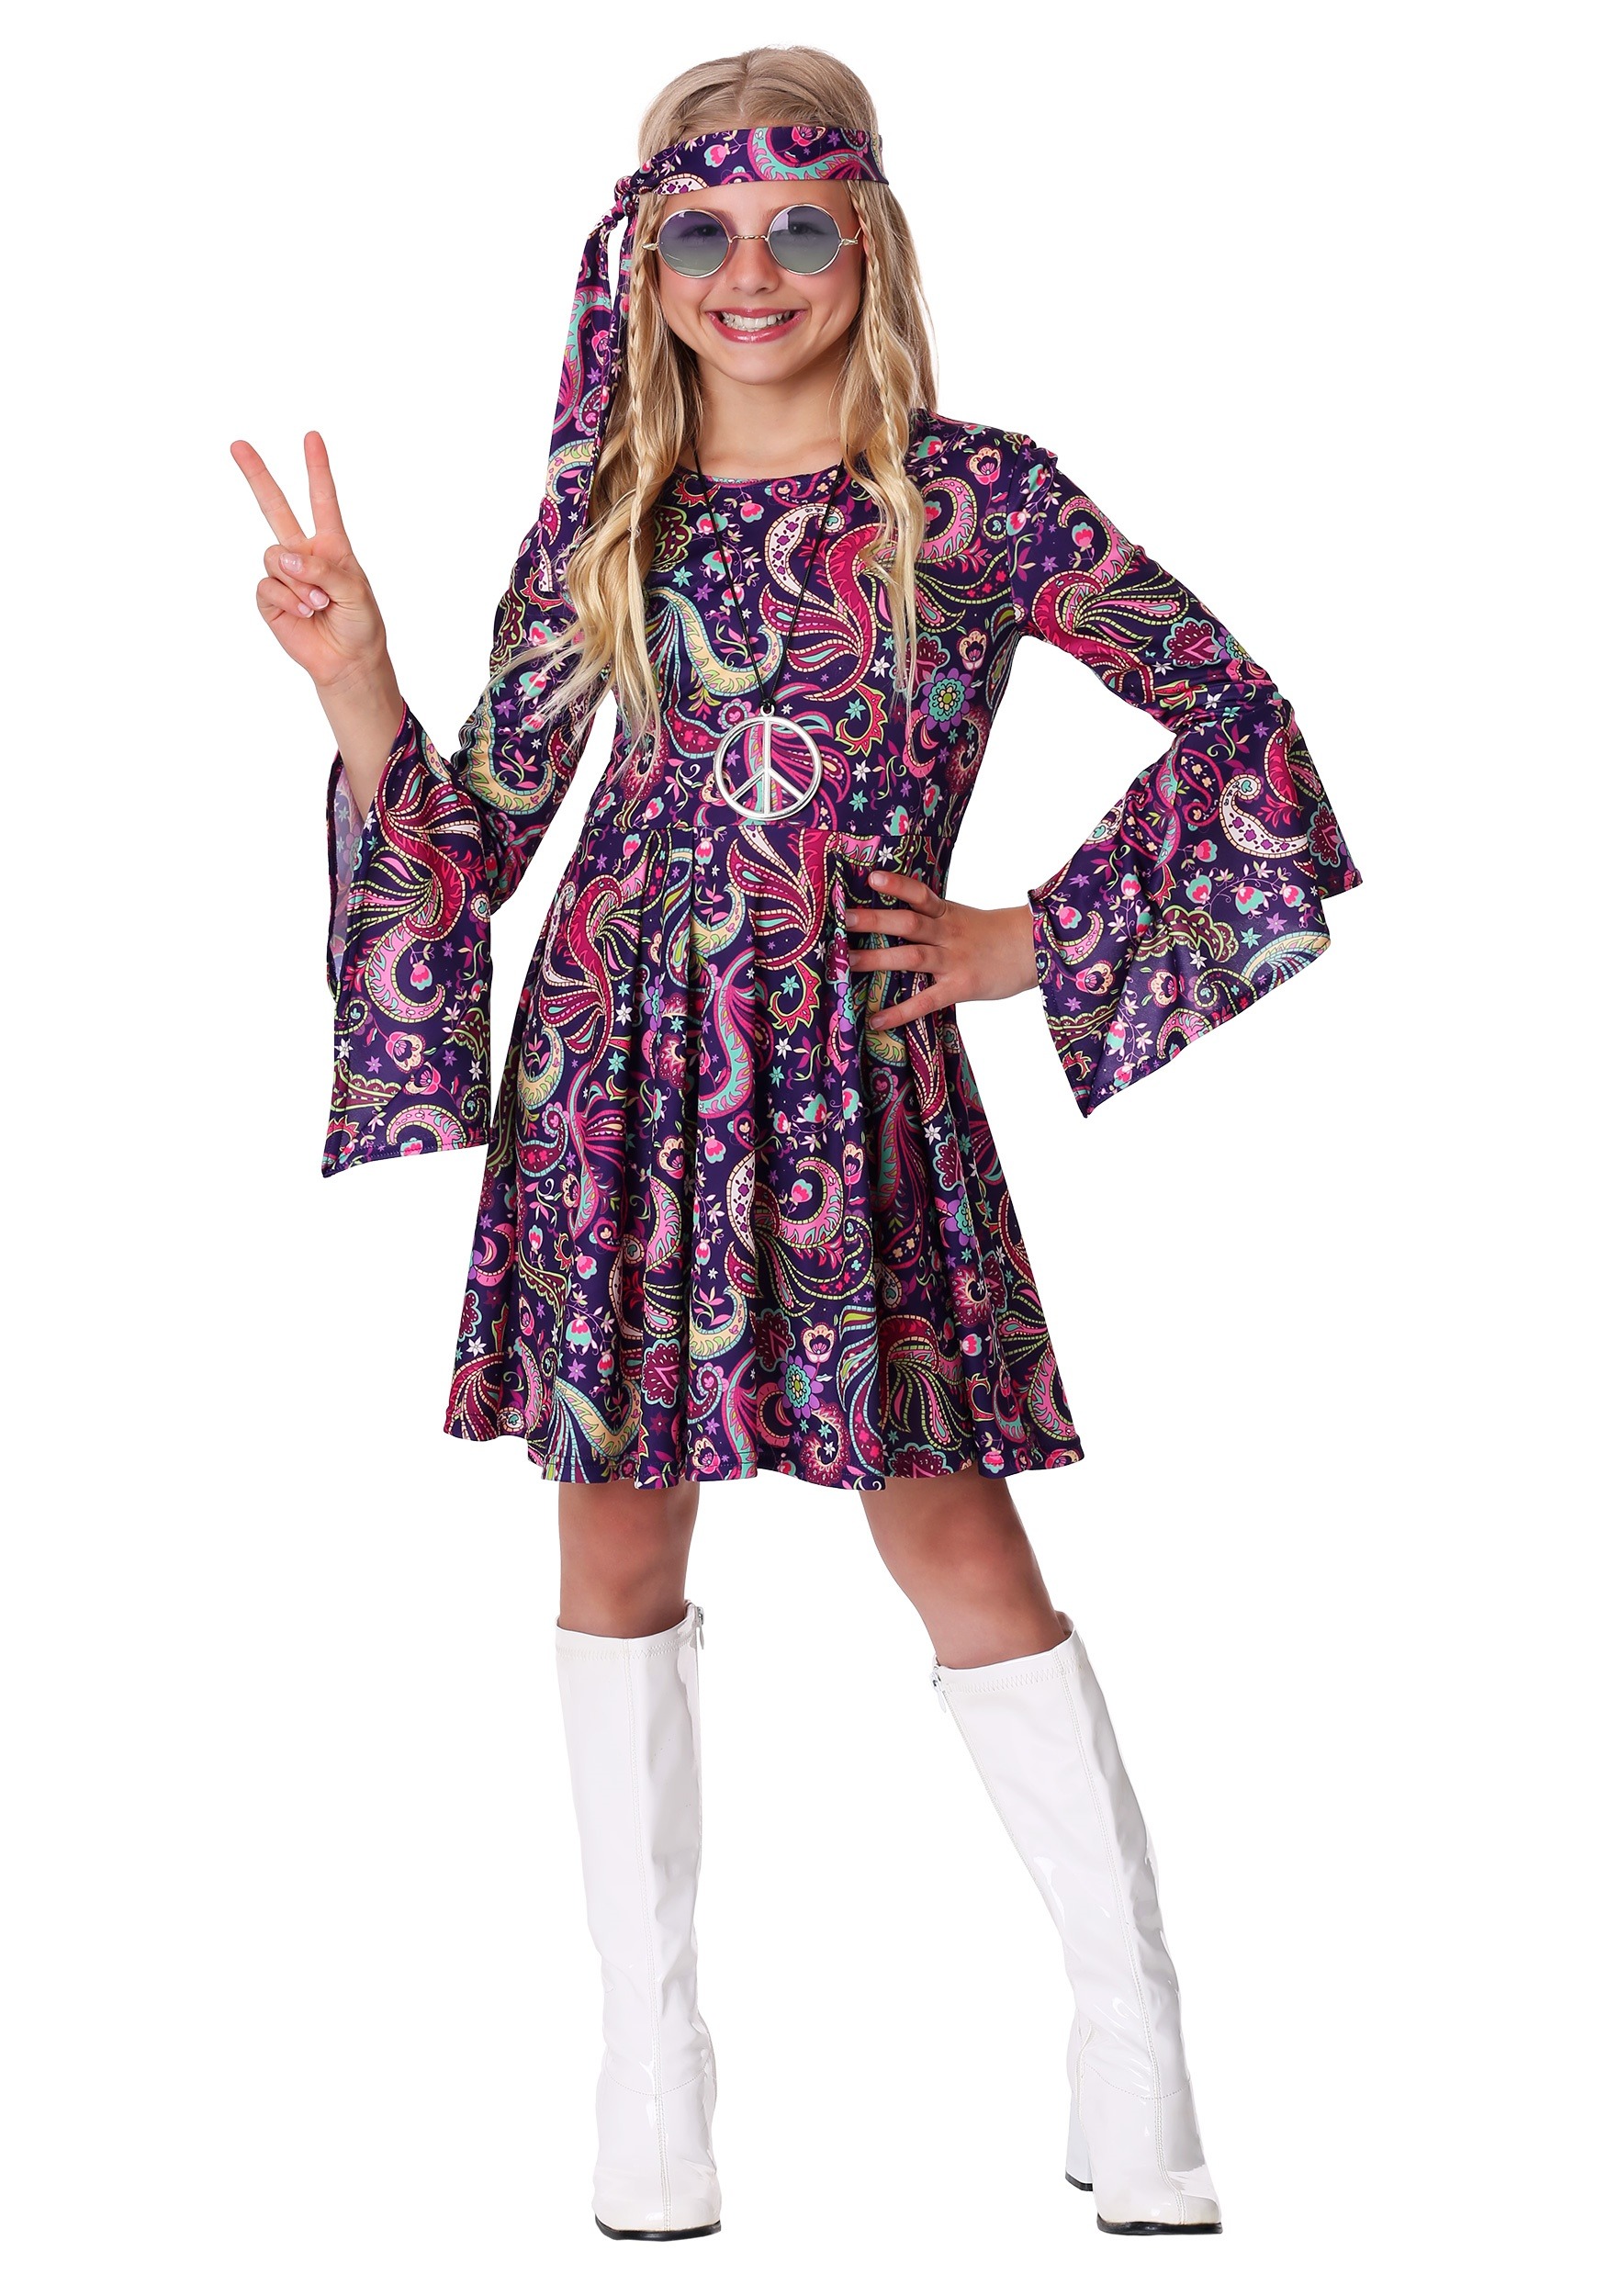 Woodstock Girl's 60s Hippie Costume